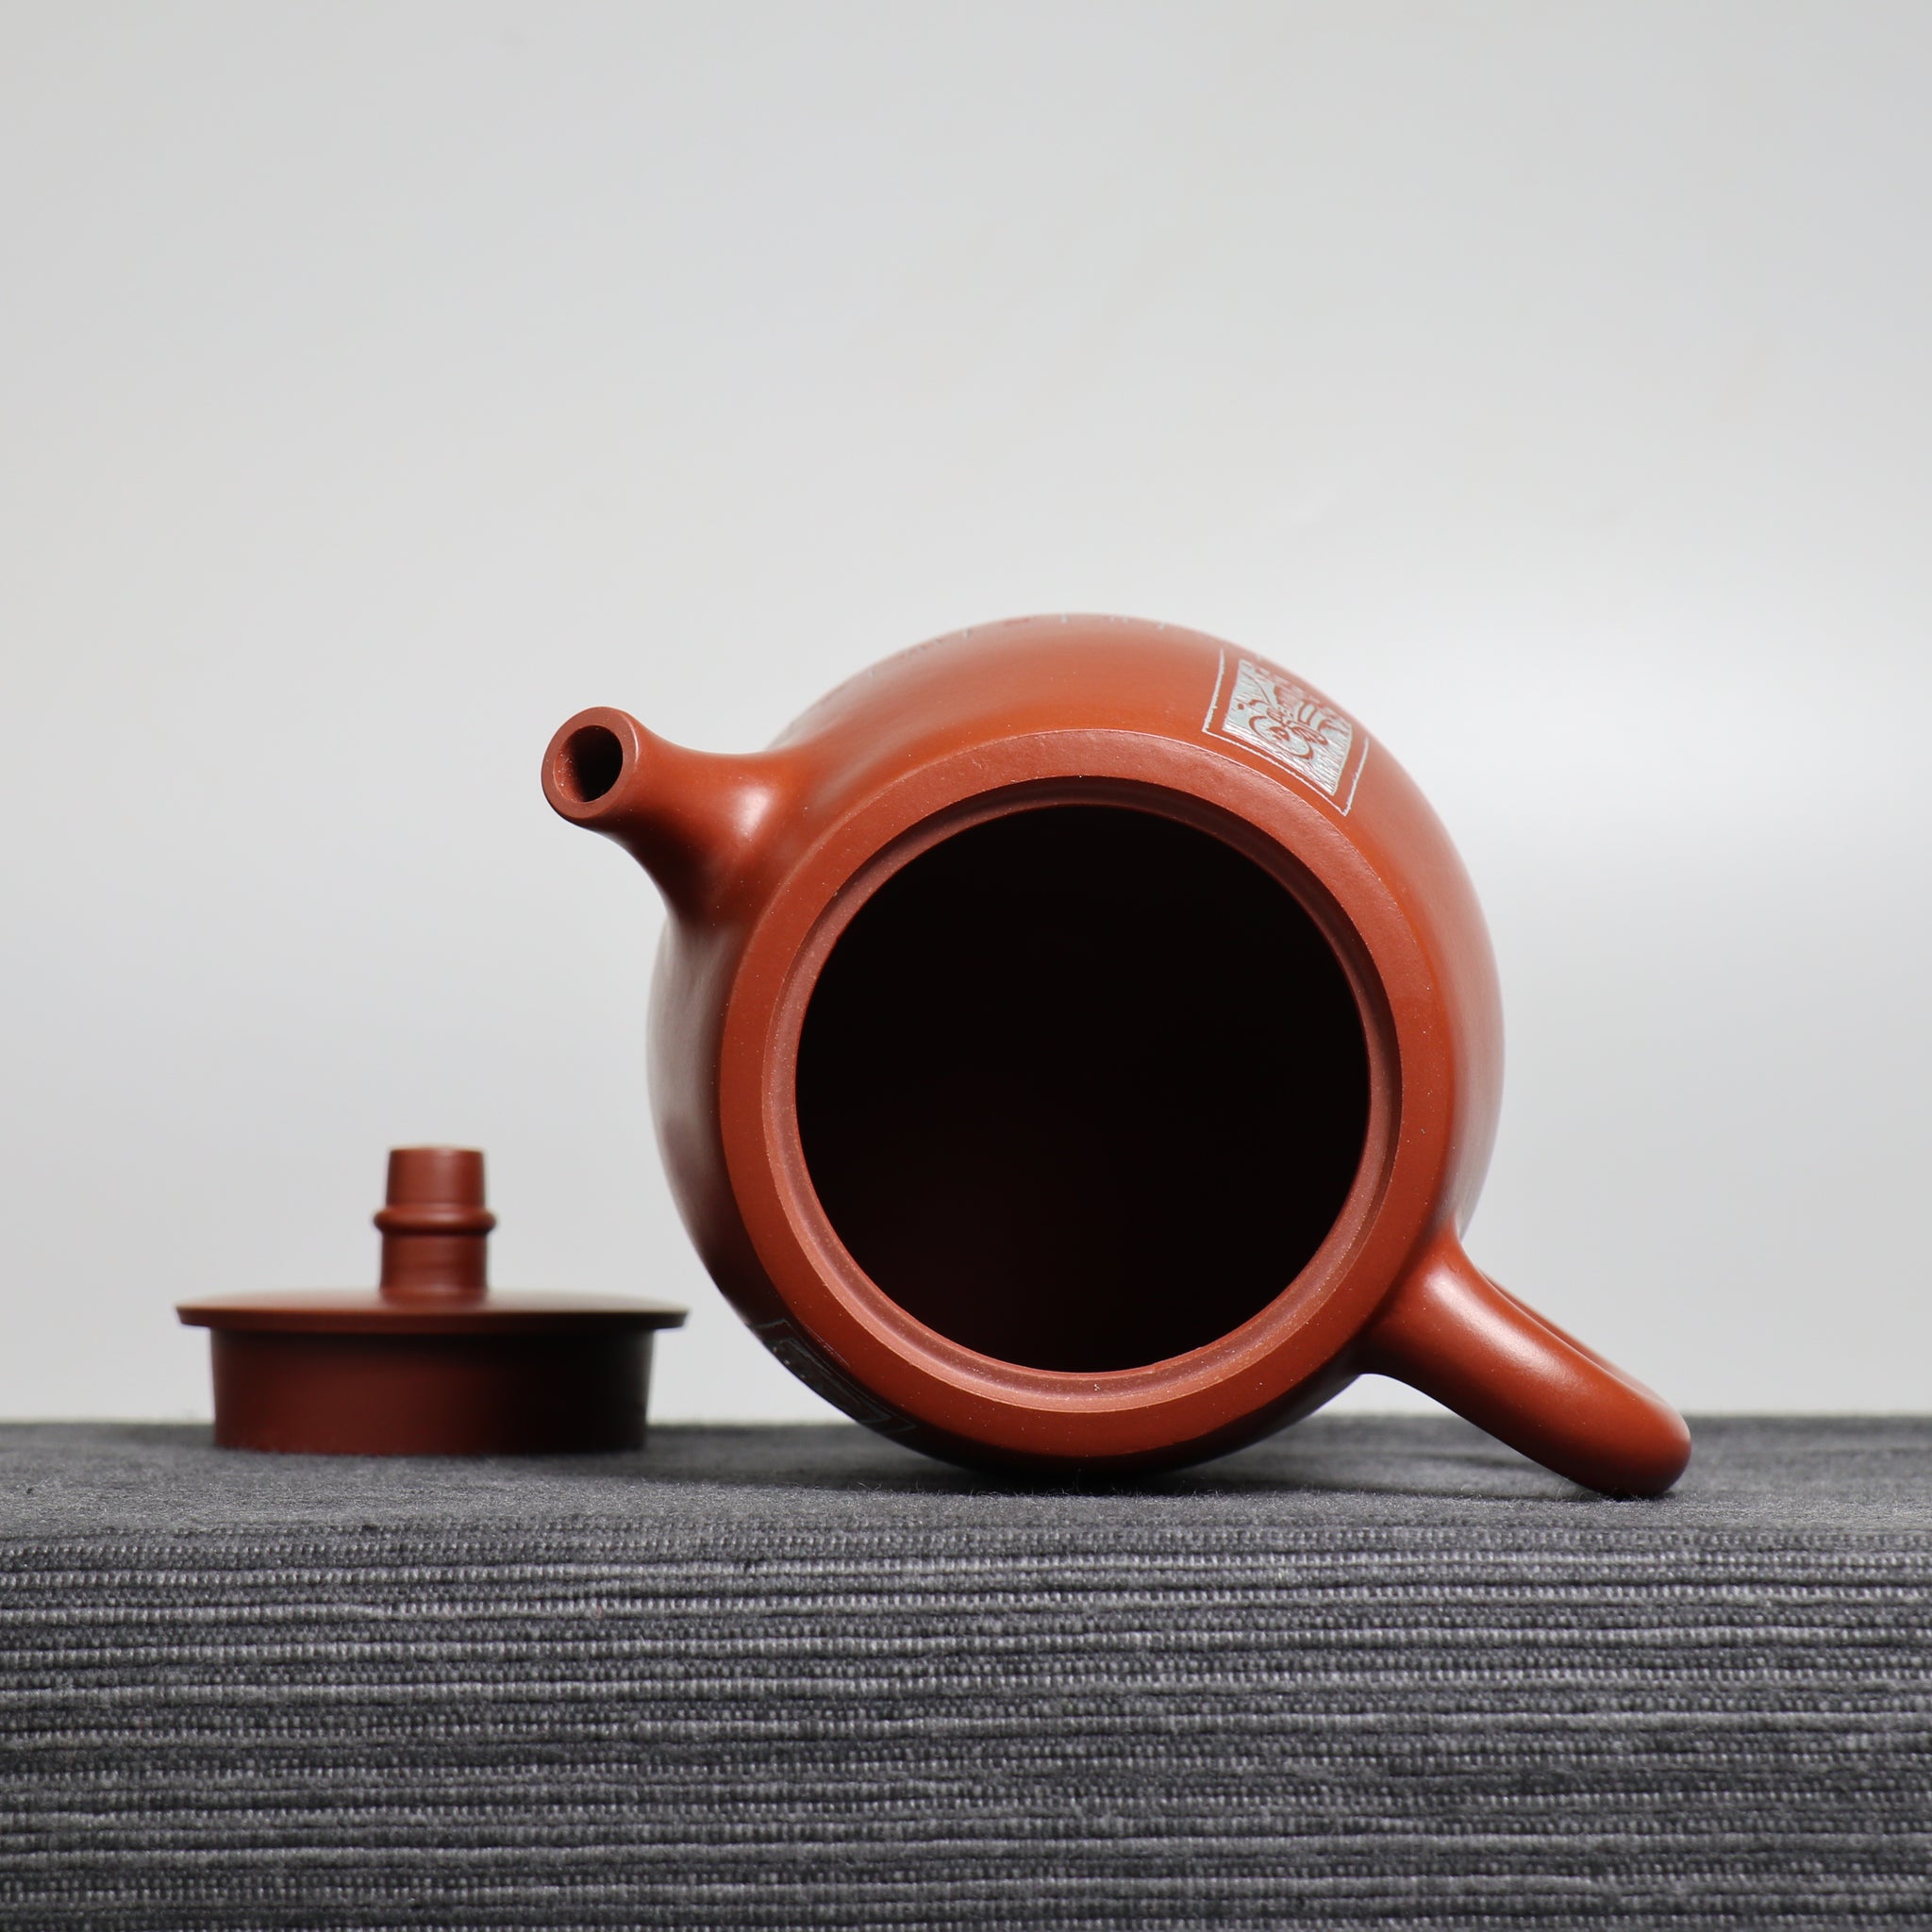 【漢鐸】大紅袍書法篆刻紫砂茶壺